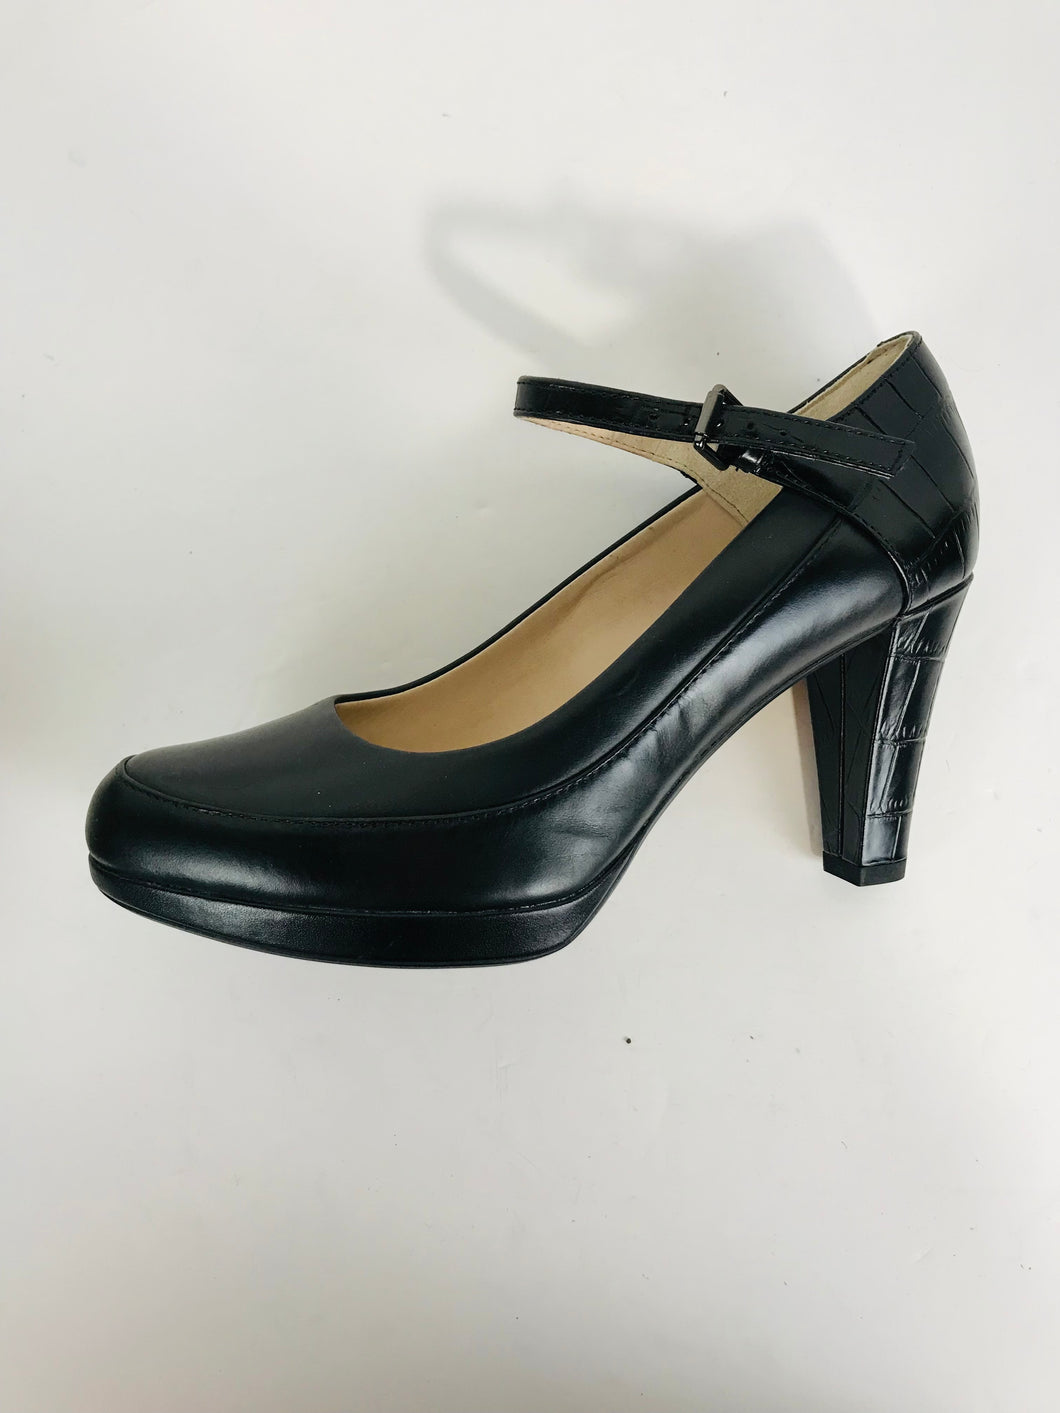 Clarks Women's Leather Court Heels | UK5.5 | Black